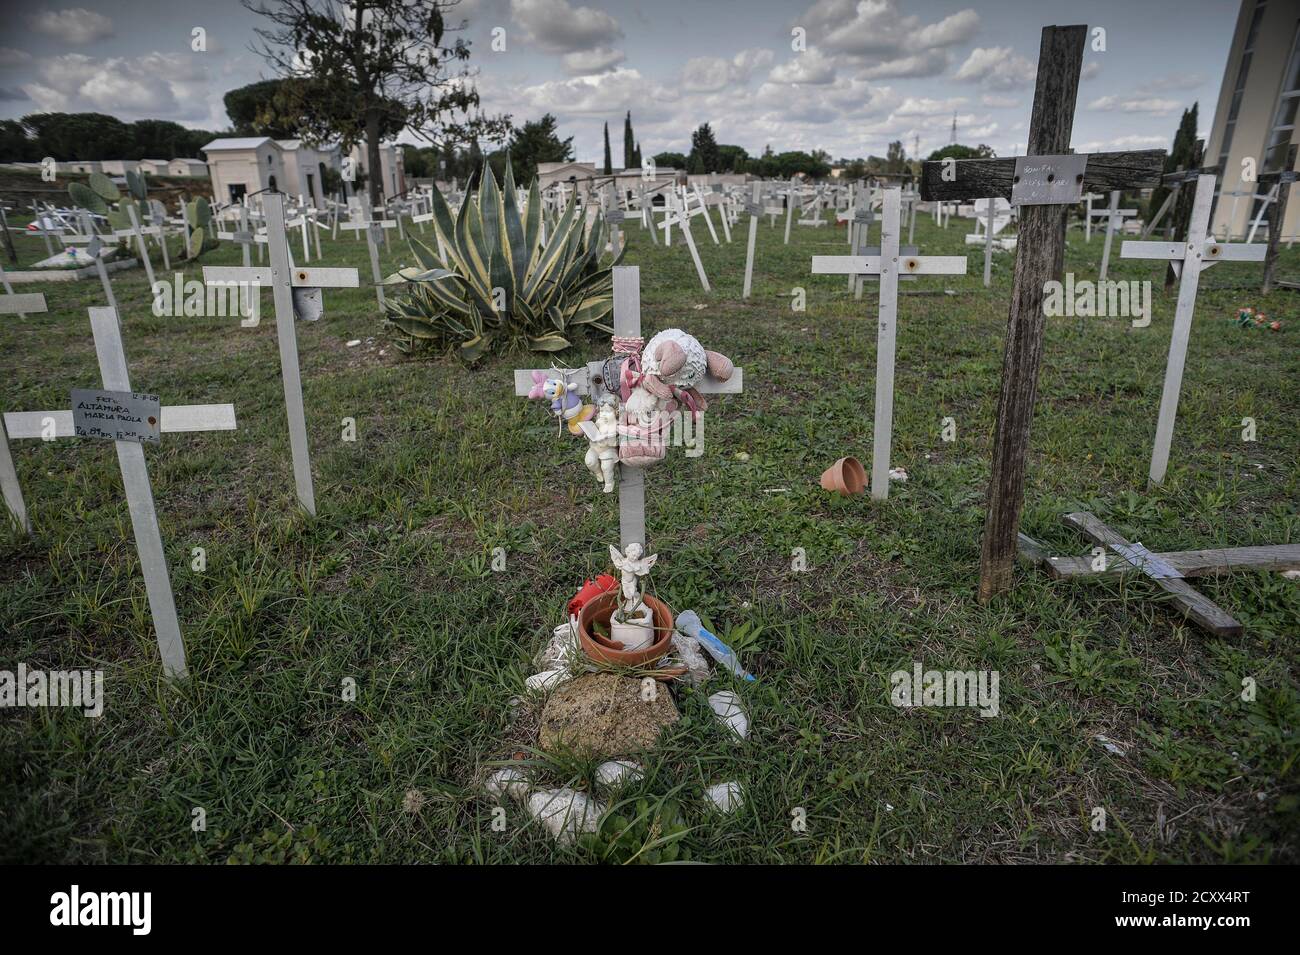 Rome, Italie. 1er octobre 2020. Al cimitero Flaminio di Prima Porta ci sono  centinaia di croci bianche sotto le quali sono stati sepolti i feti  obortiti. Selle croci sono riportati i nomi